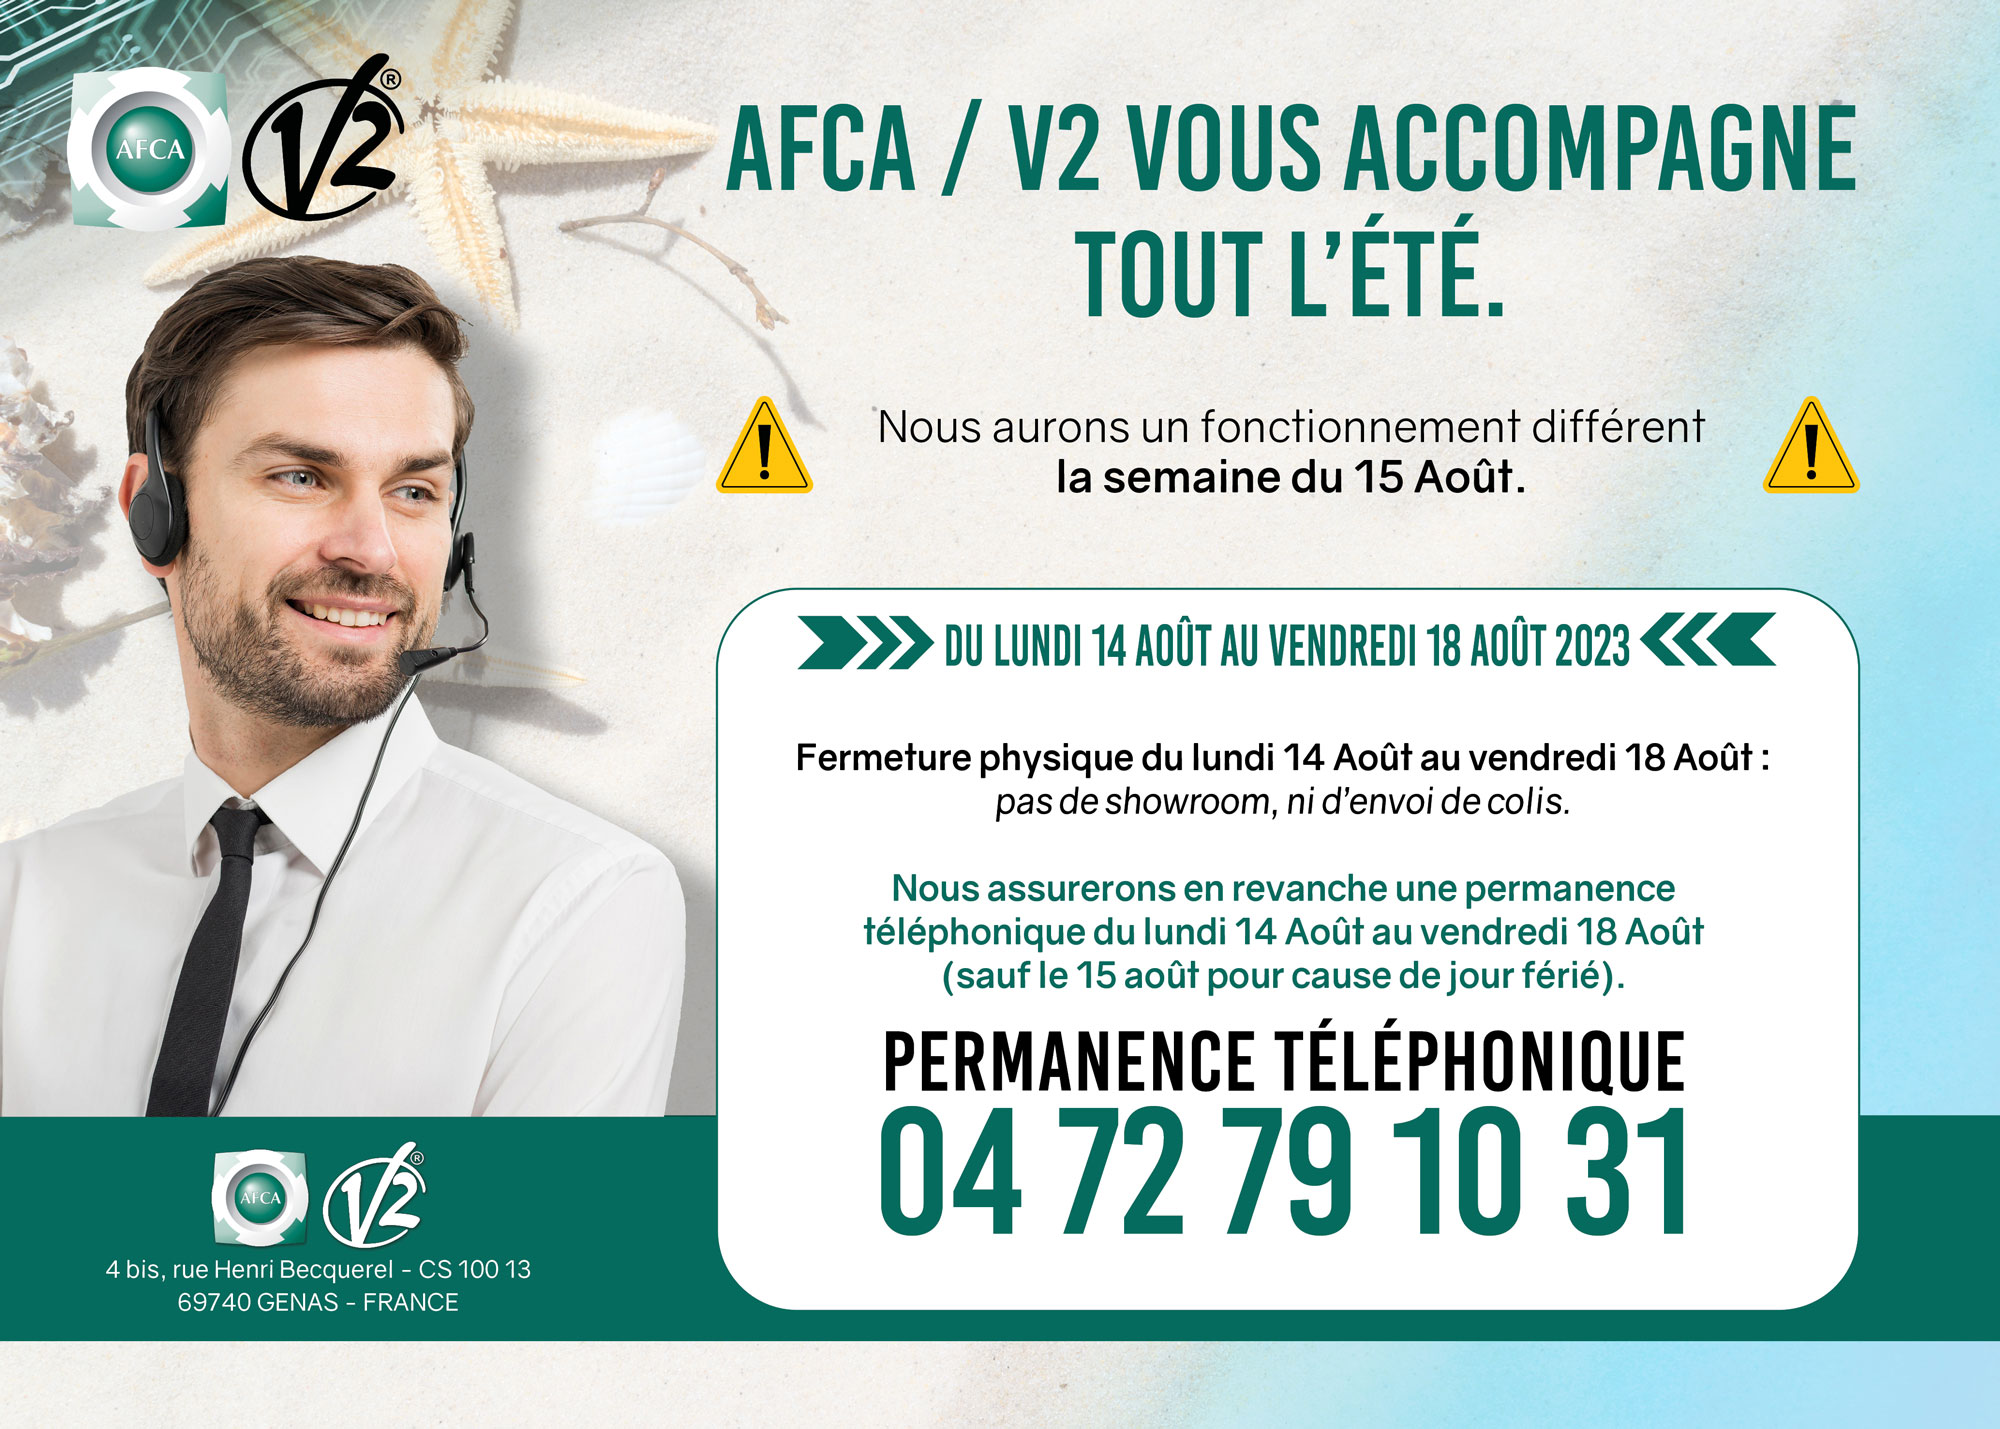 AFCA/V2 fermera physiquement la semaine du 15 Août 2023